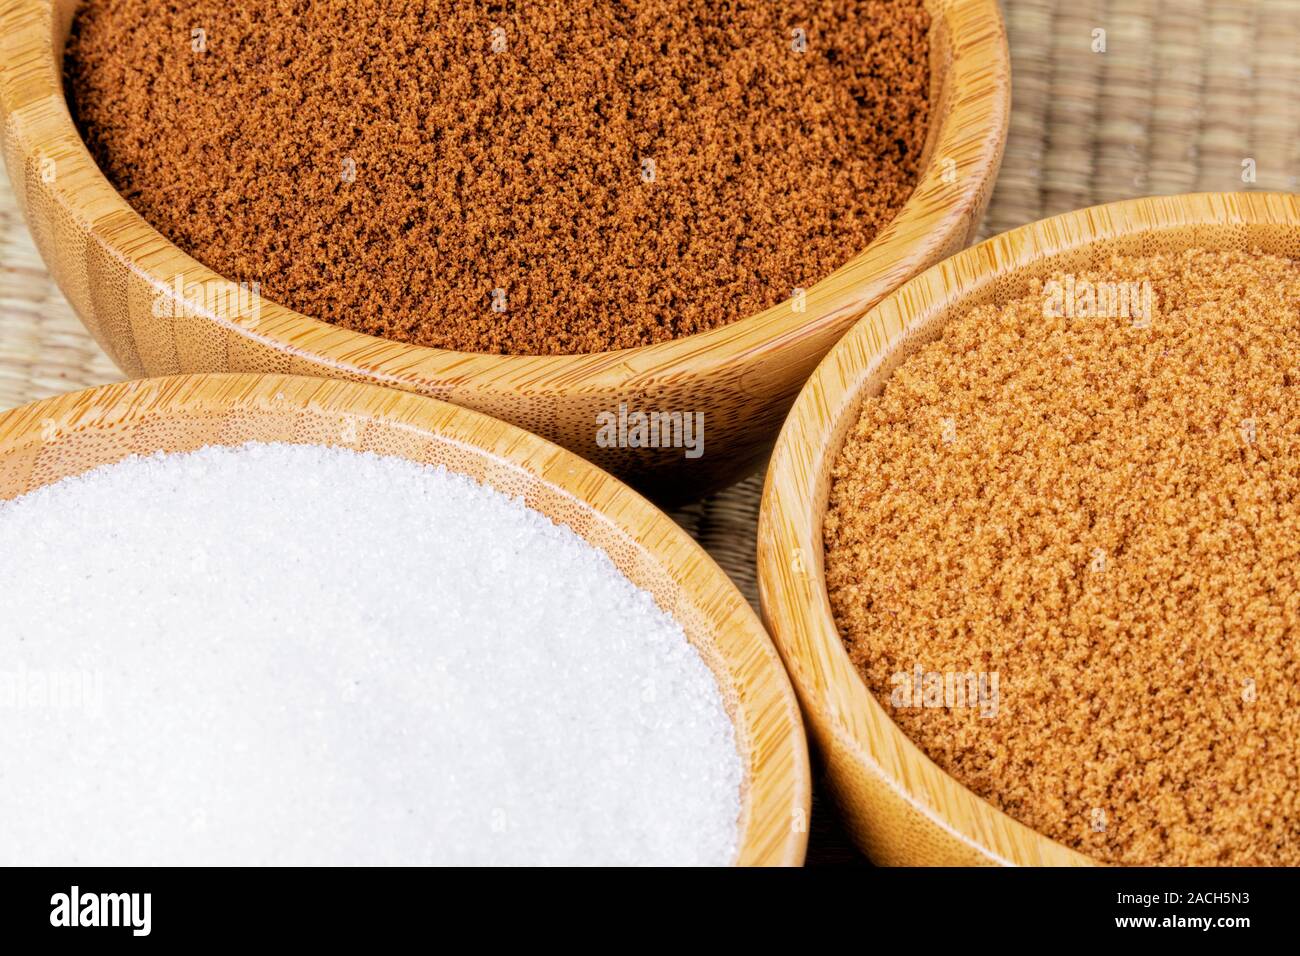 Drei hölzerne Schalen verschiedener Zucker, brauner Zucker, Braun Zucker, und Kristallzucker auf einem Bambus Hintergrund Stockfoto